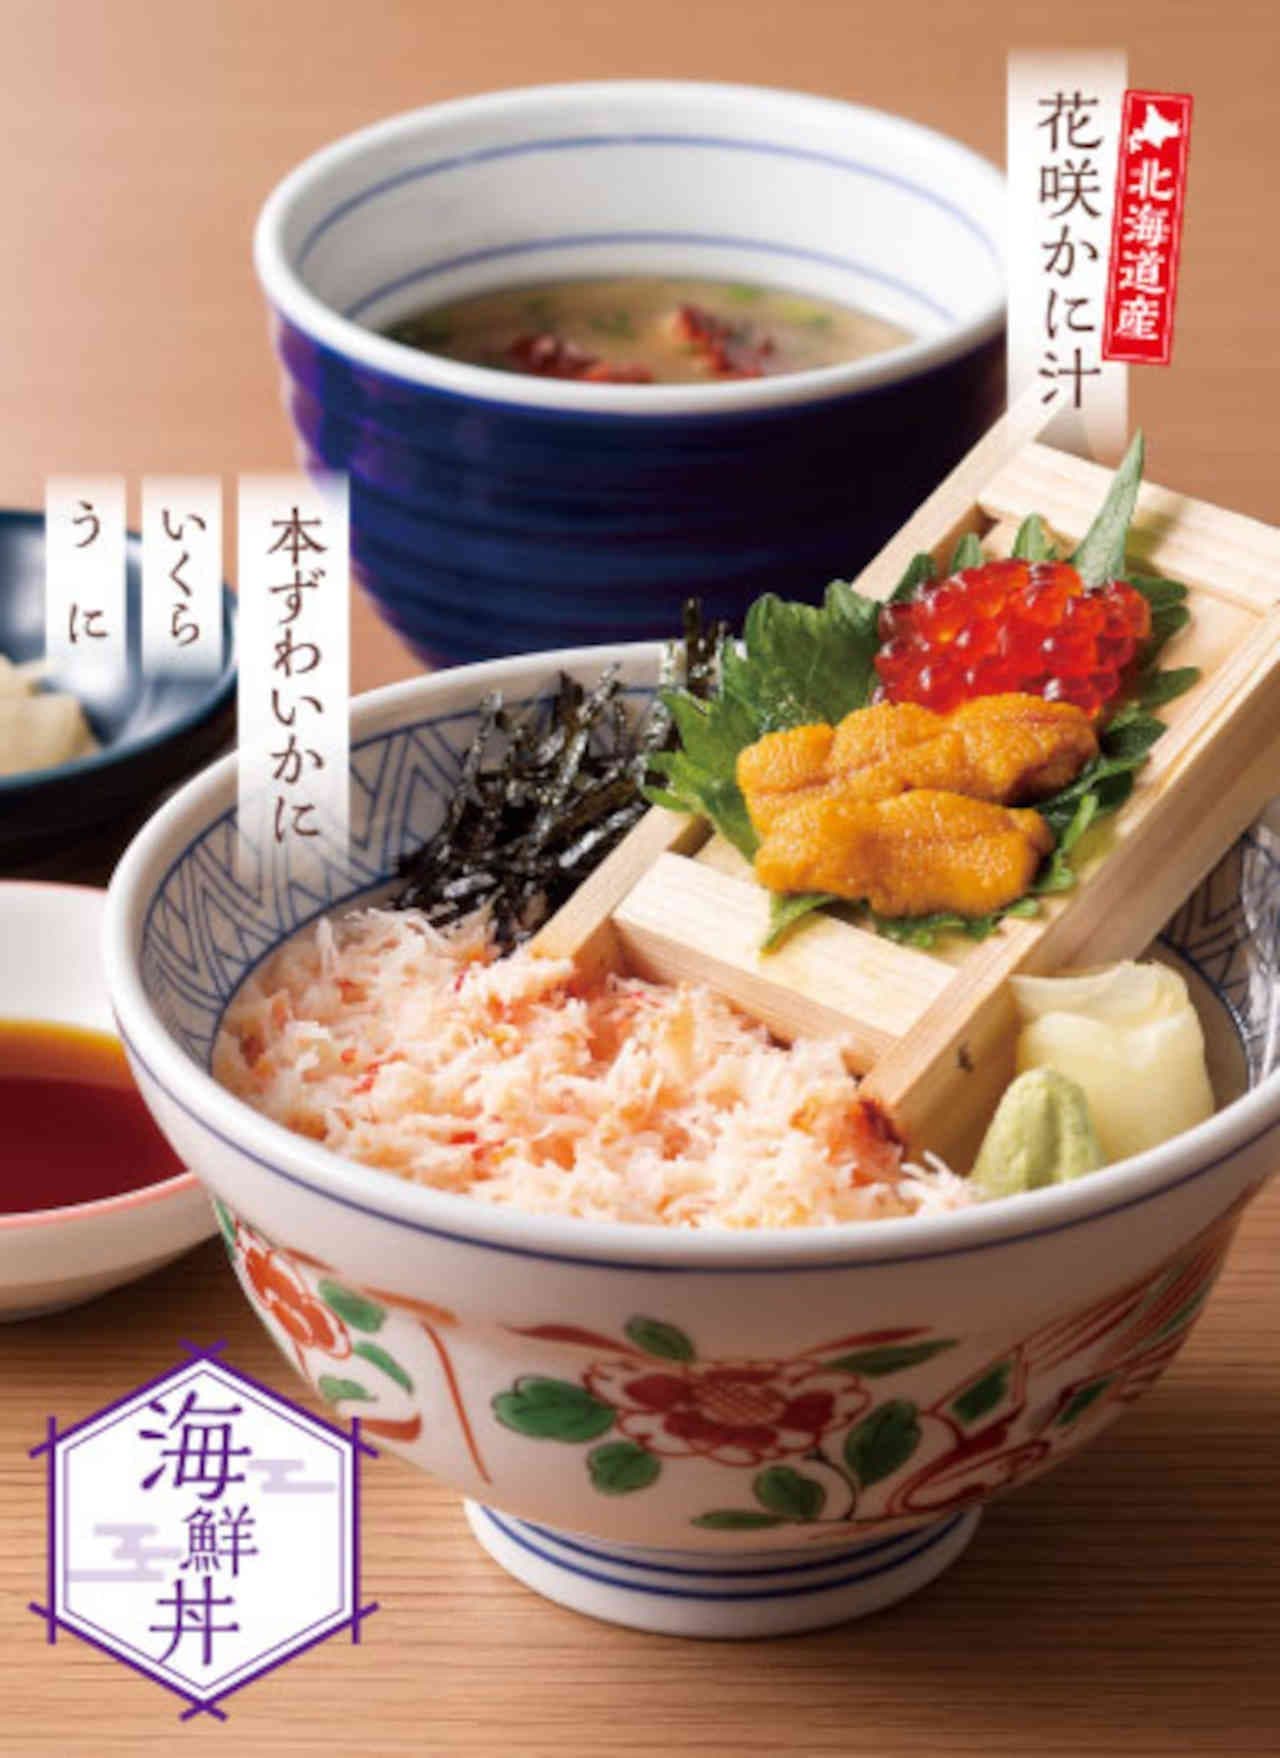 Yume-an "Honzuwai kani salmon roe seiro gohan and crab soup set" and "Honzuwai kani seafood three-course bowl and crab soup set